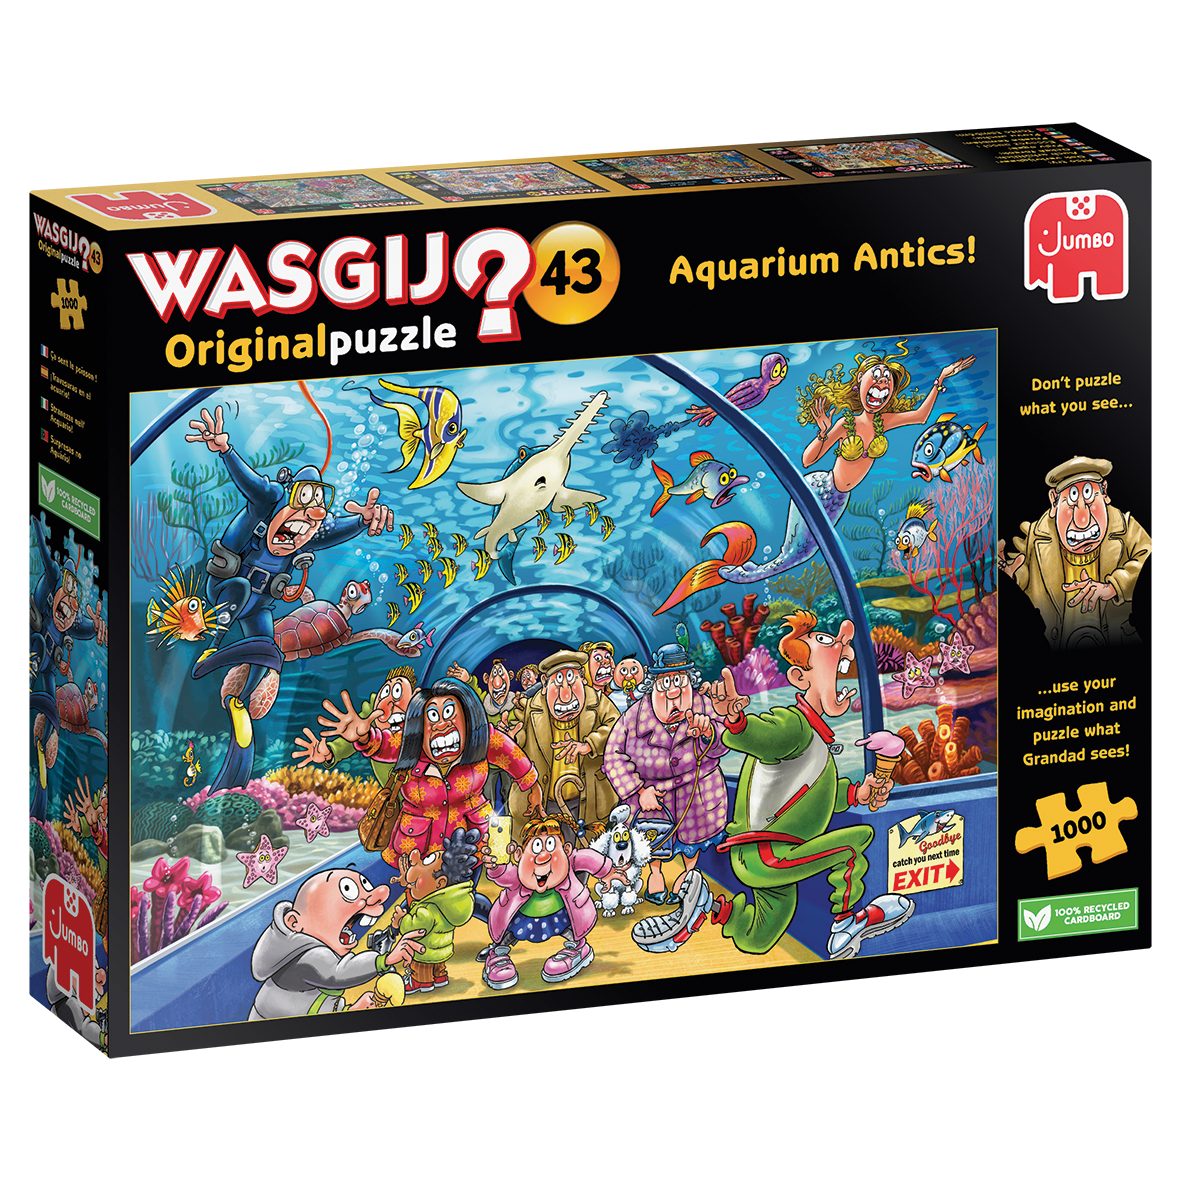 1110100020 Jumbo Spiele Puzzle Wasgij Aquarium Puzzleteile 1000 43 Antics, Original